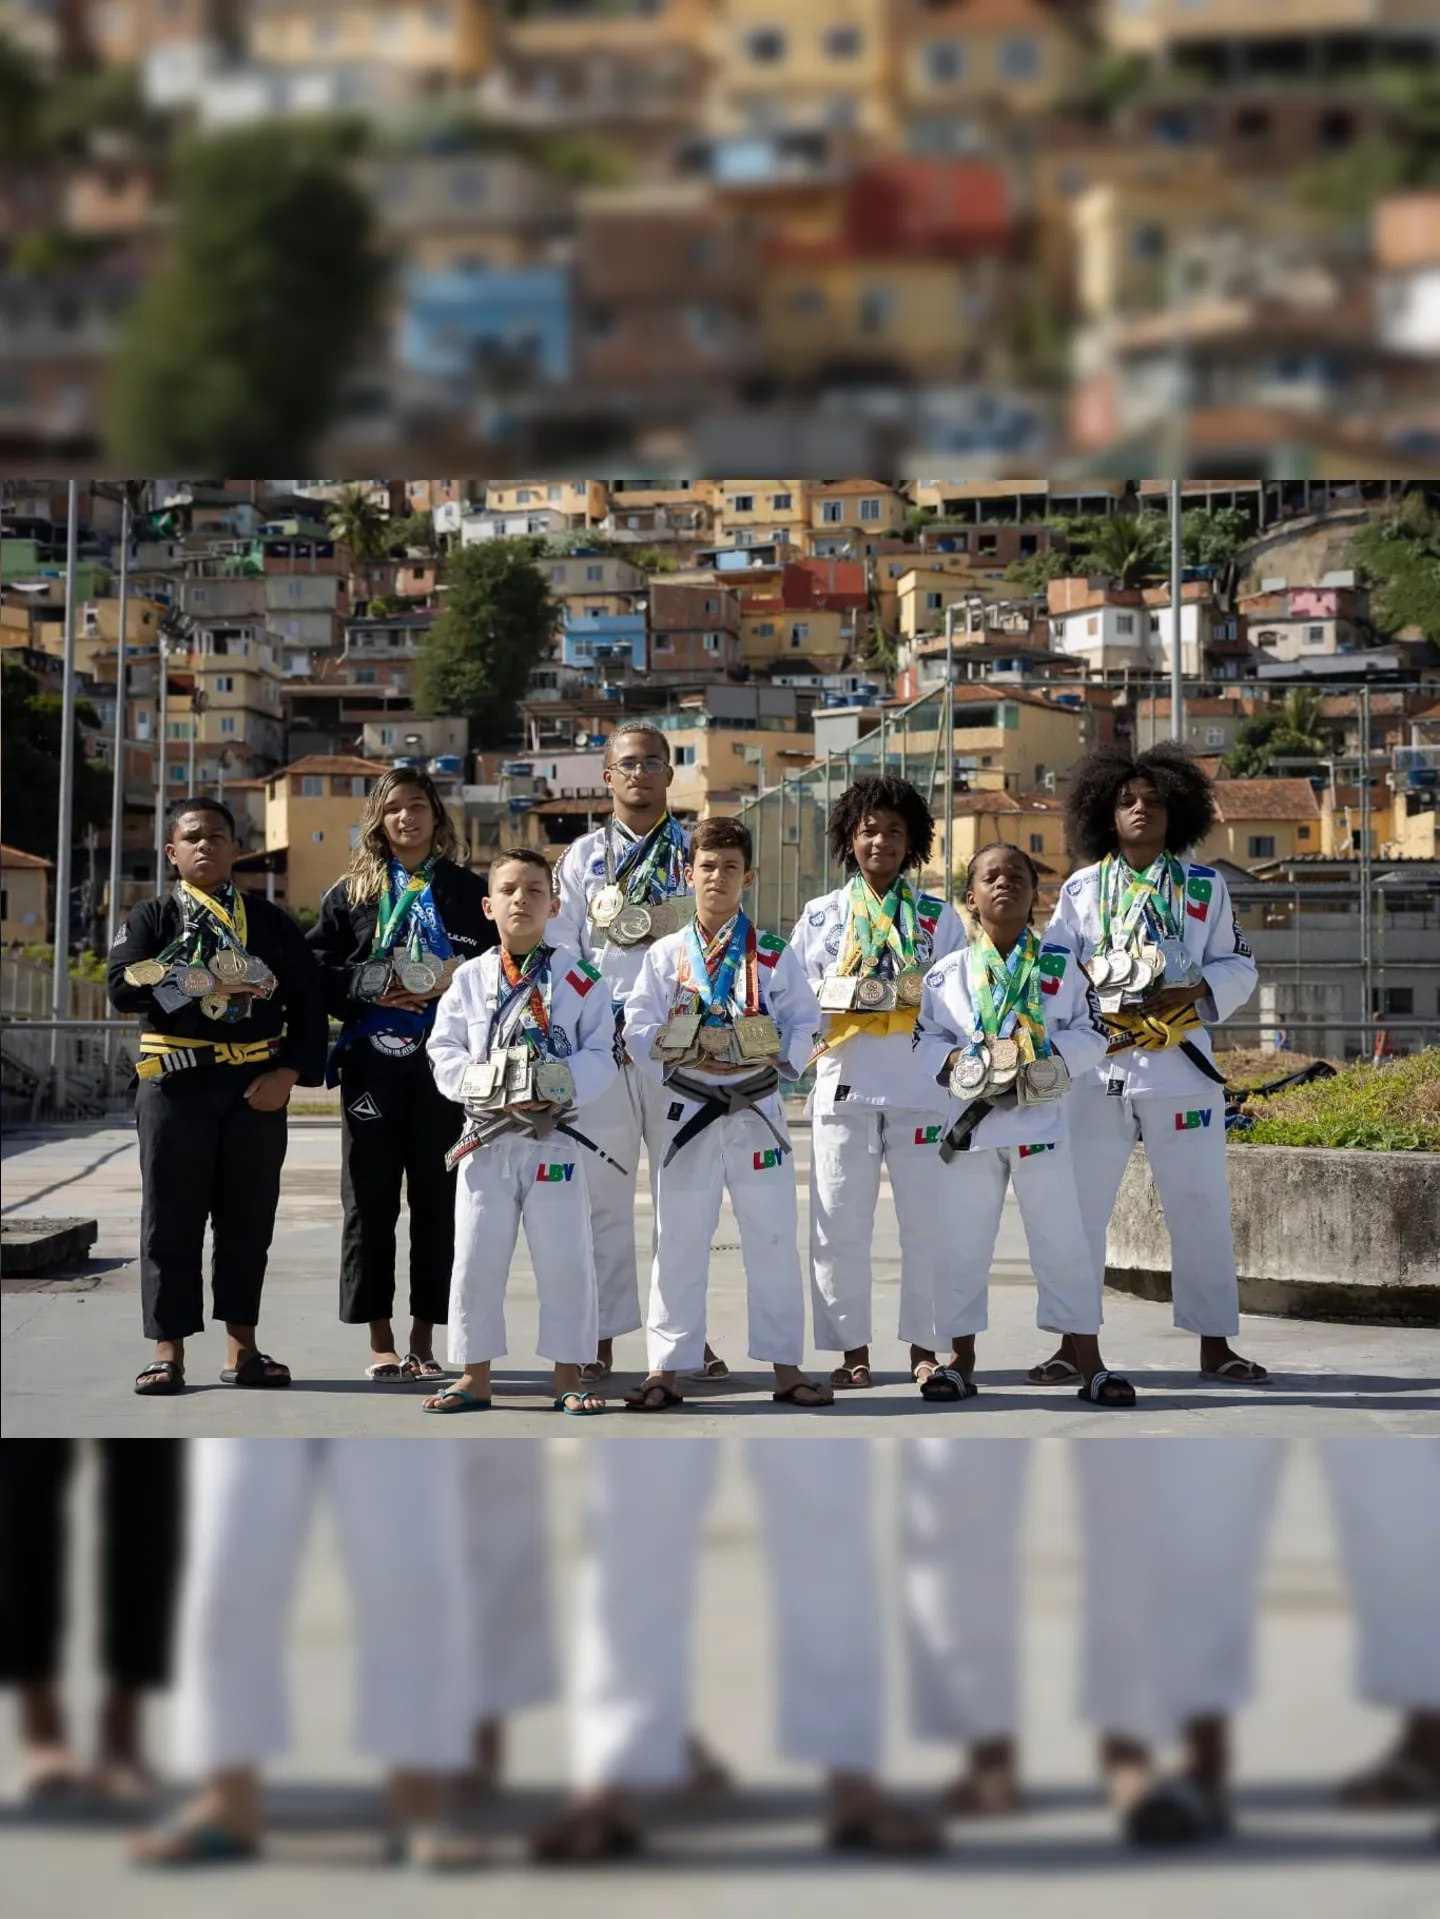 Sete dos atletas são da Comunidade da Providência; e um da Comunidade do Jacarezinho